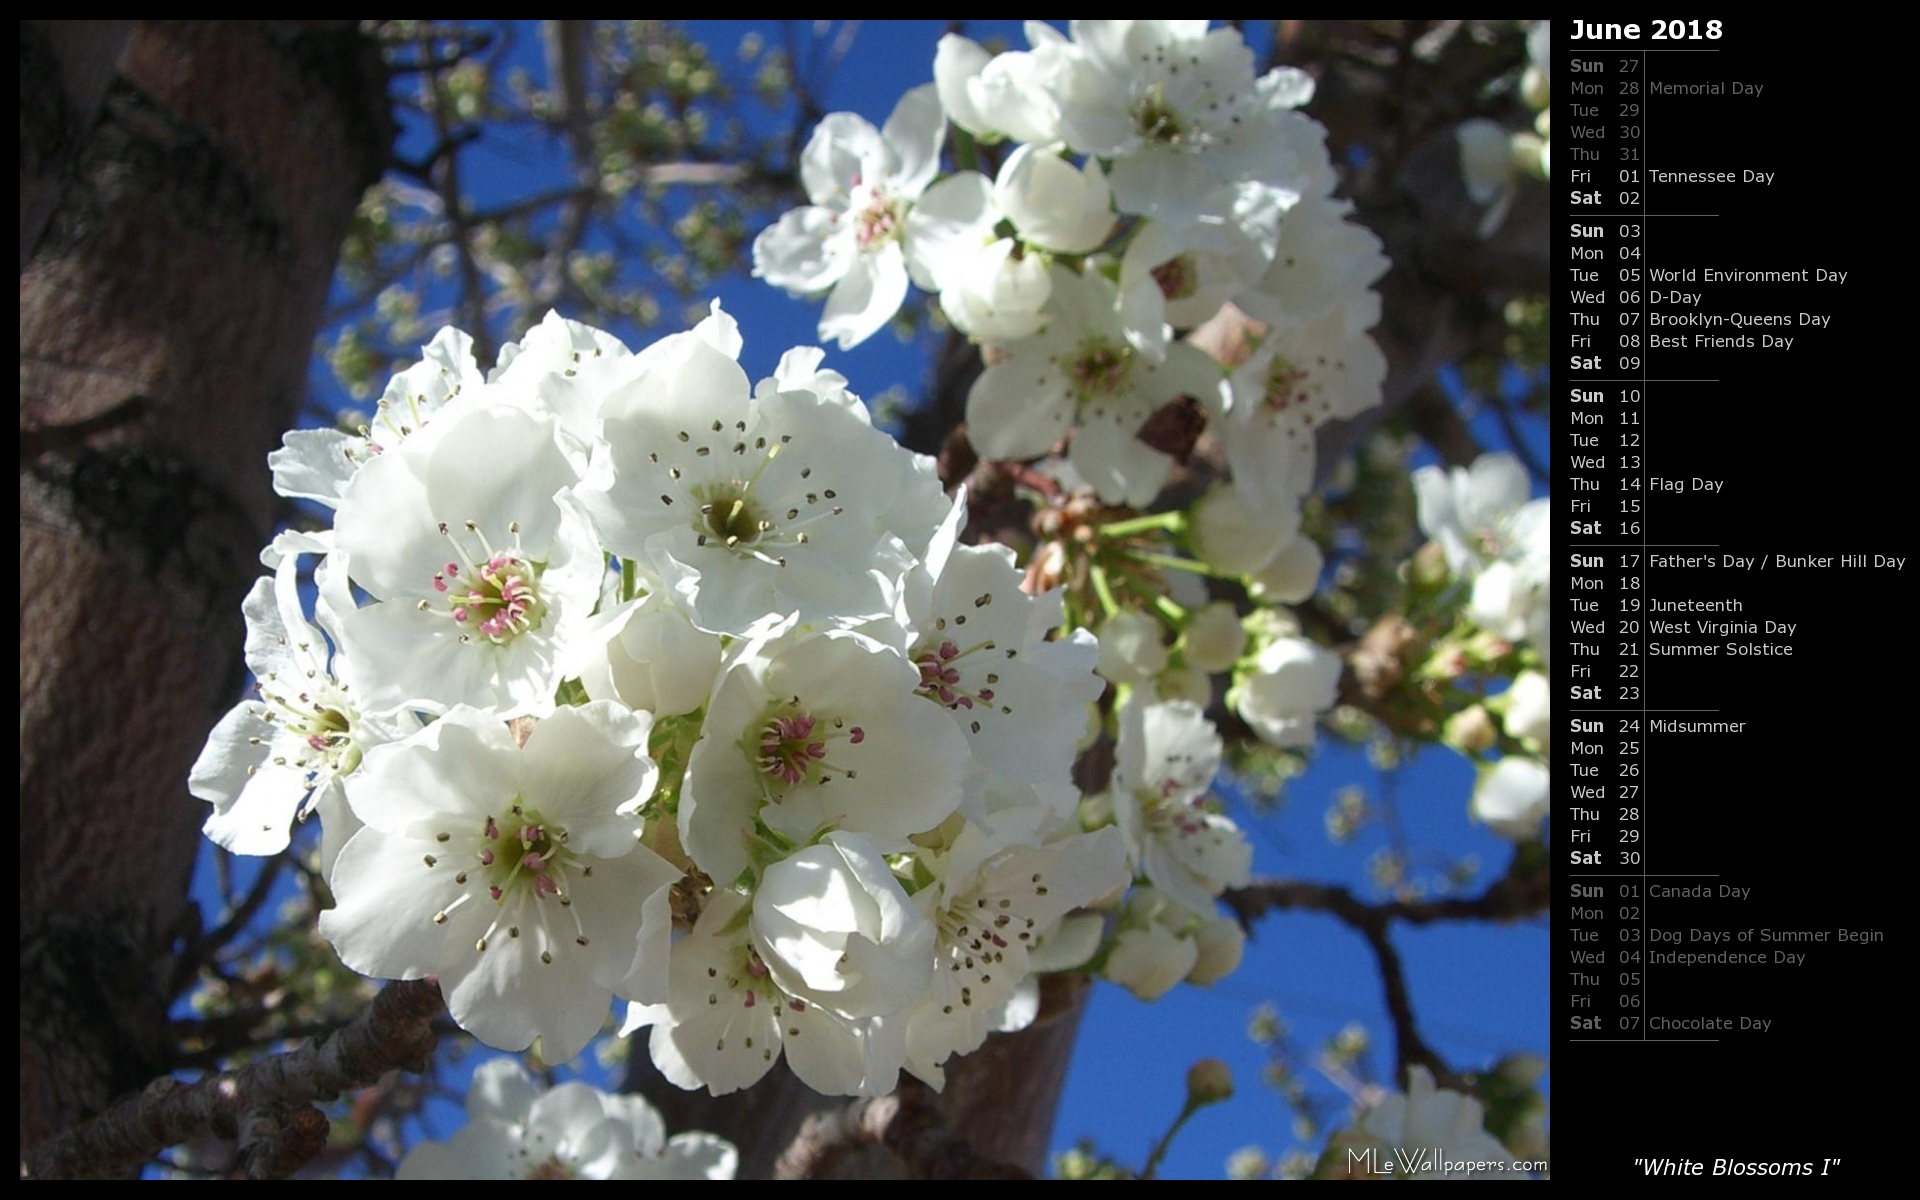 MLeWallpapers.com - White Blossoms I (Calendar)